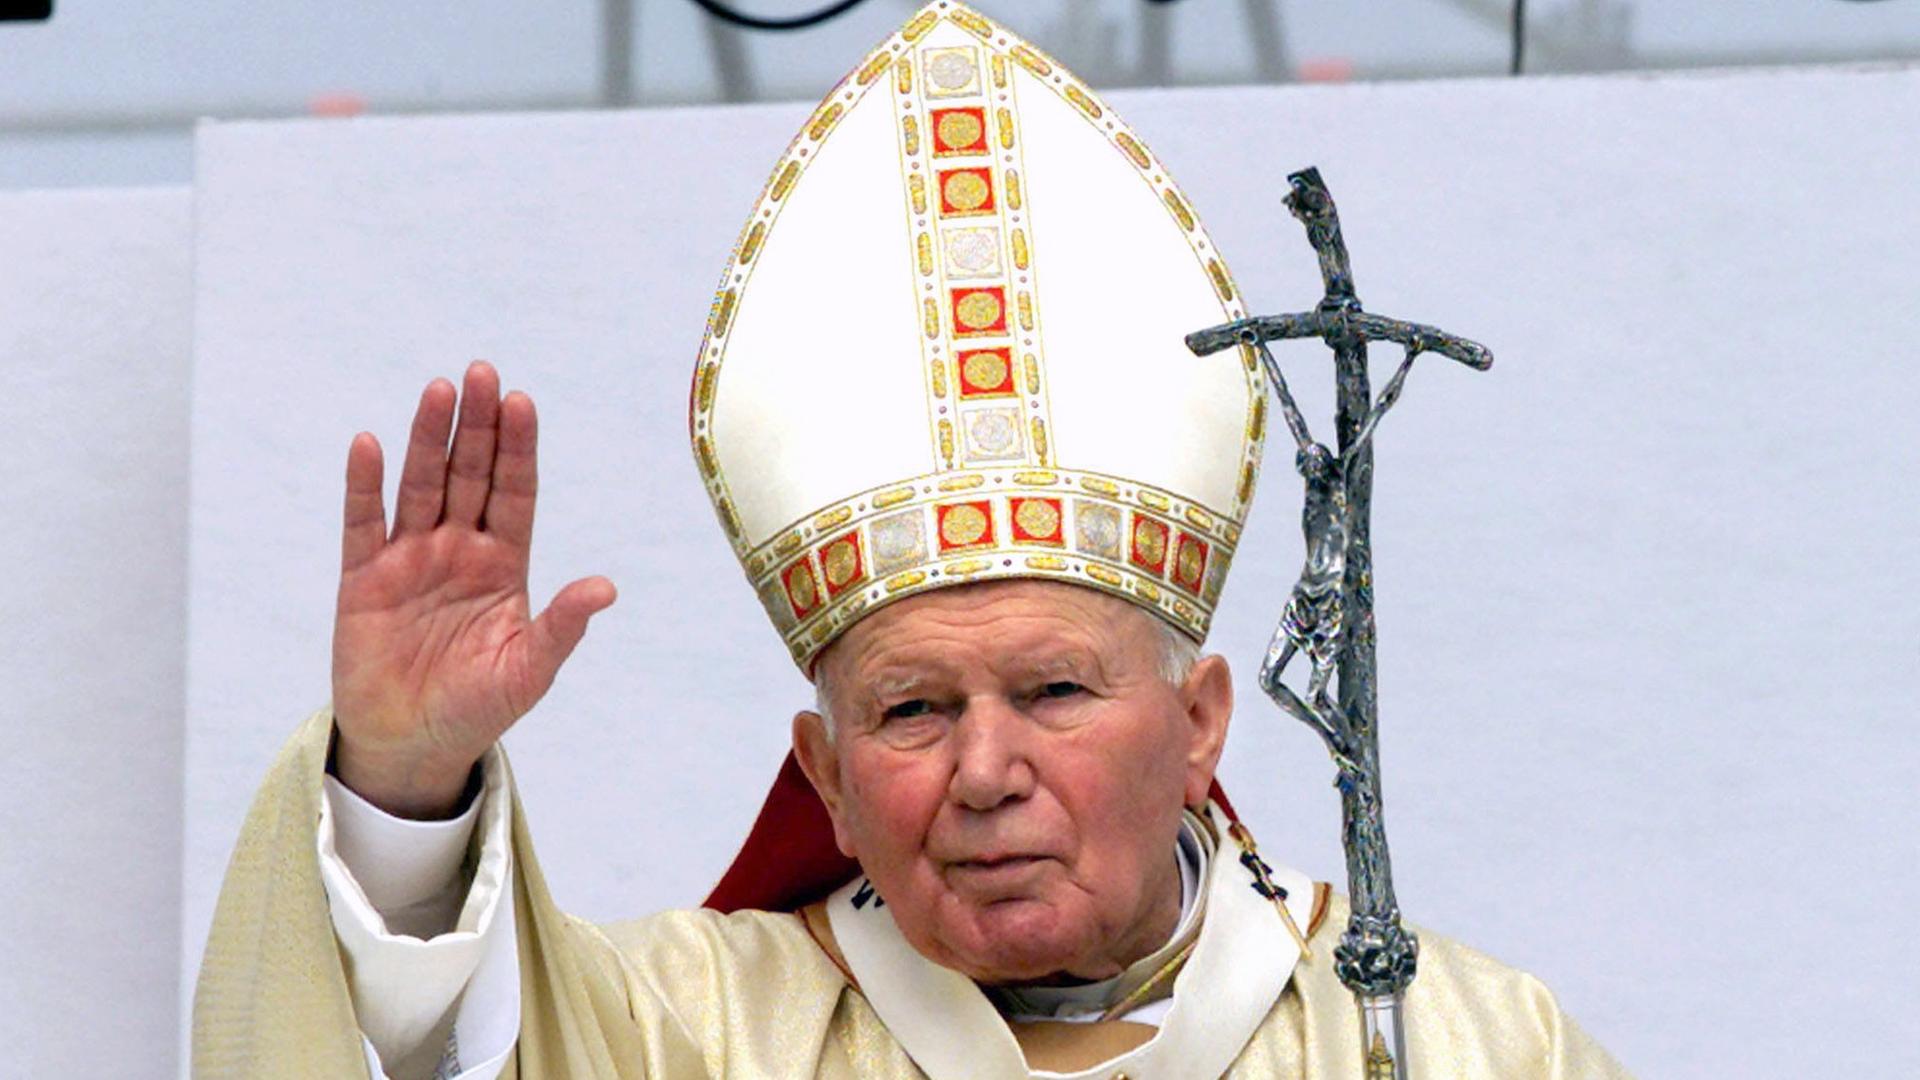 Papst Johannes Paul II. winkt am 1. Mai 2000 während einer Veranstaltung am Rande von Rom den Teilnehmern zu.